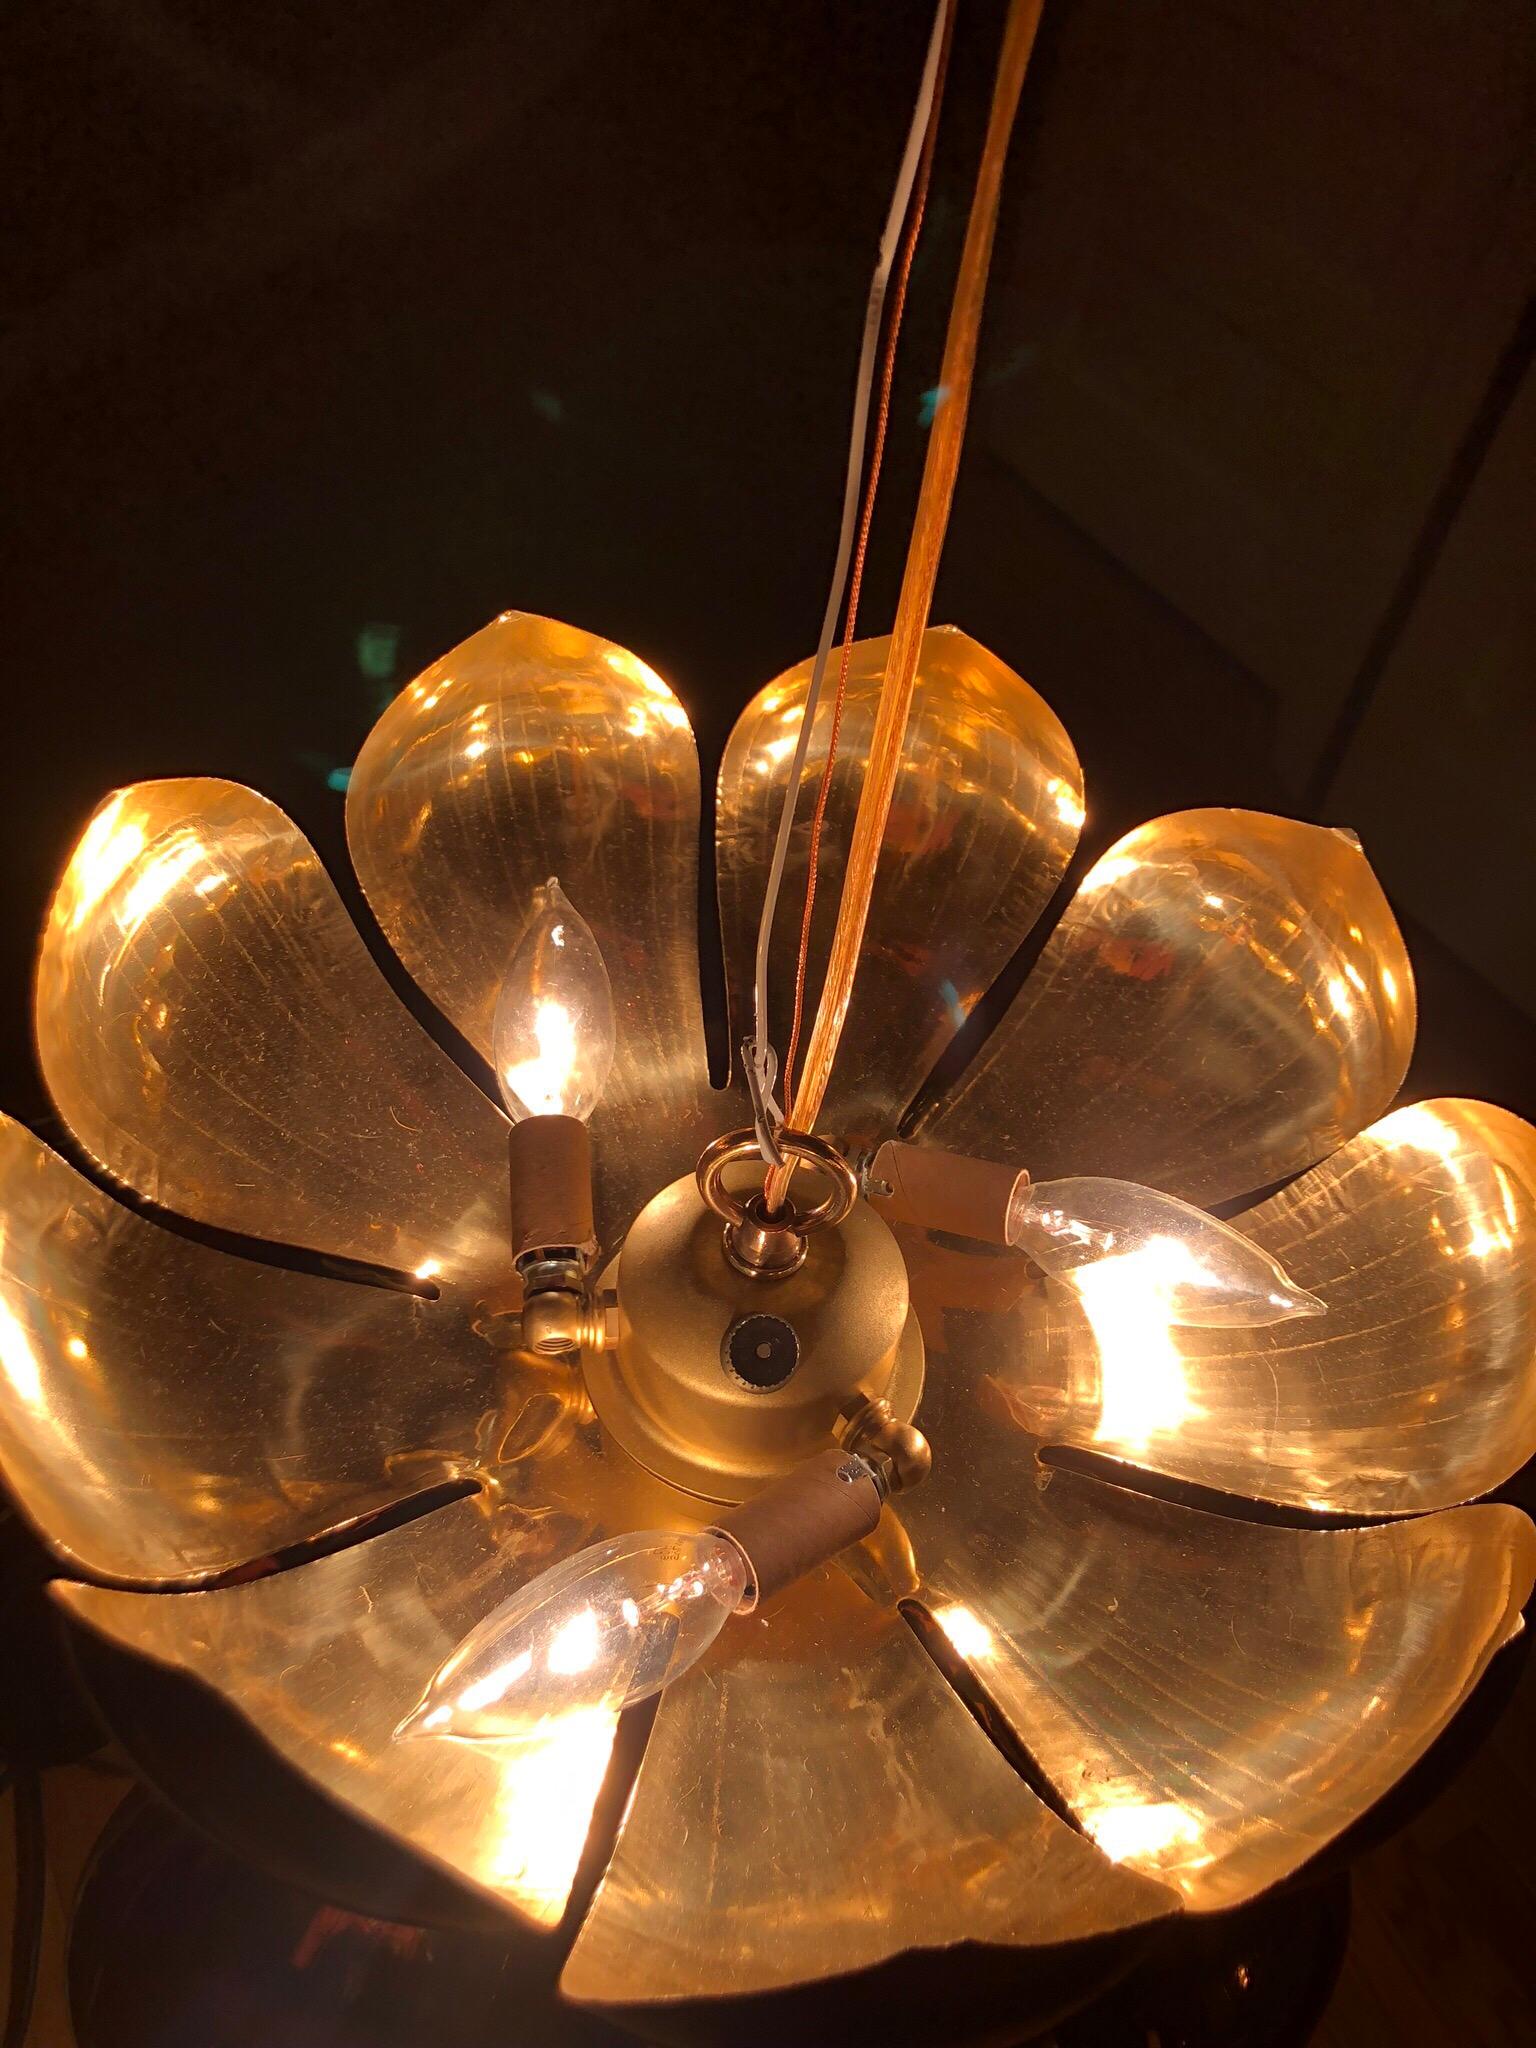 Luminaire à pédoncule lotus en laiton de style Parzinger par Feldman Lighting Company. Les pétales en laiton, délicats et joliment gravés, sont dotés d'un éclairage vers le haut et vers le bas. Le plus grand des luminaires Feldman Lotus - et souvent